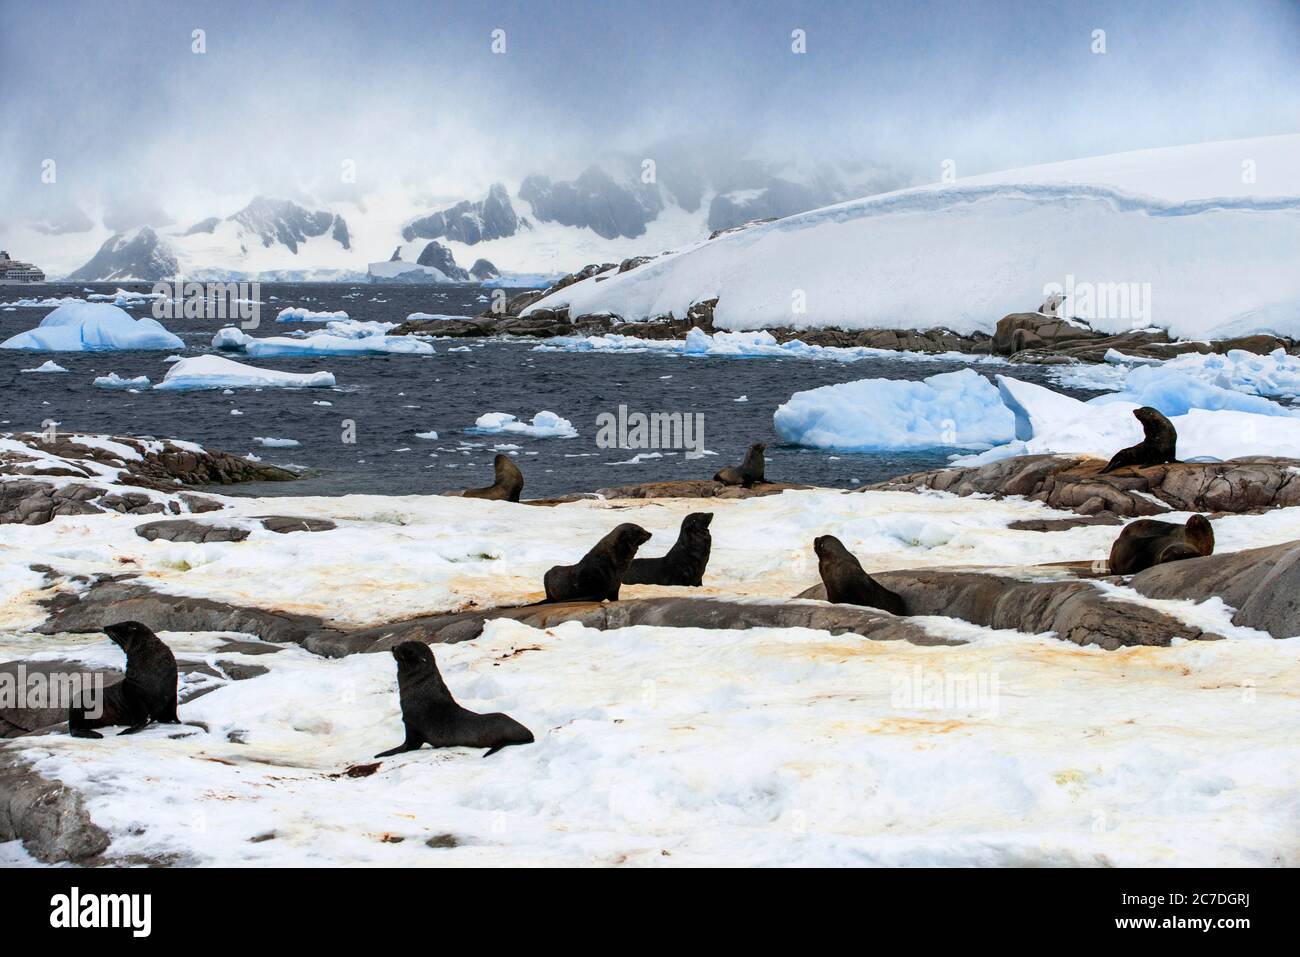 Phoque à fourrure de l'Antarctique (Arctocephalus gazella), Portal point, Antarctique. RCGS Resolute One Ocean Navigator, une expédition cinq étoiles de glace polaire Banque D'Images